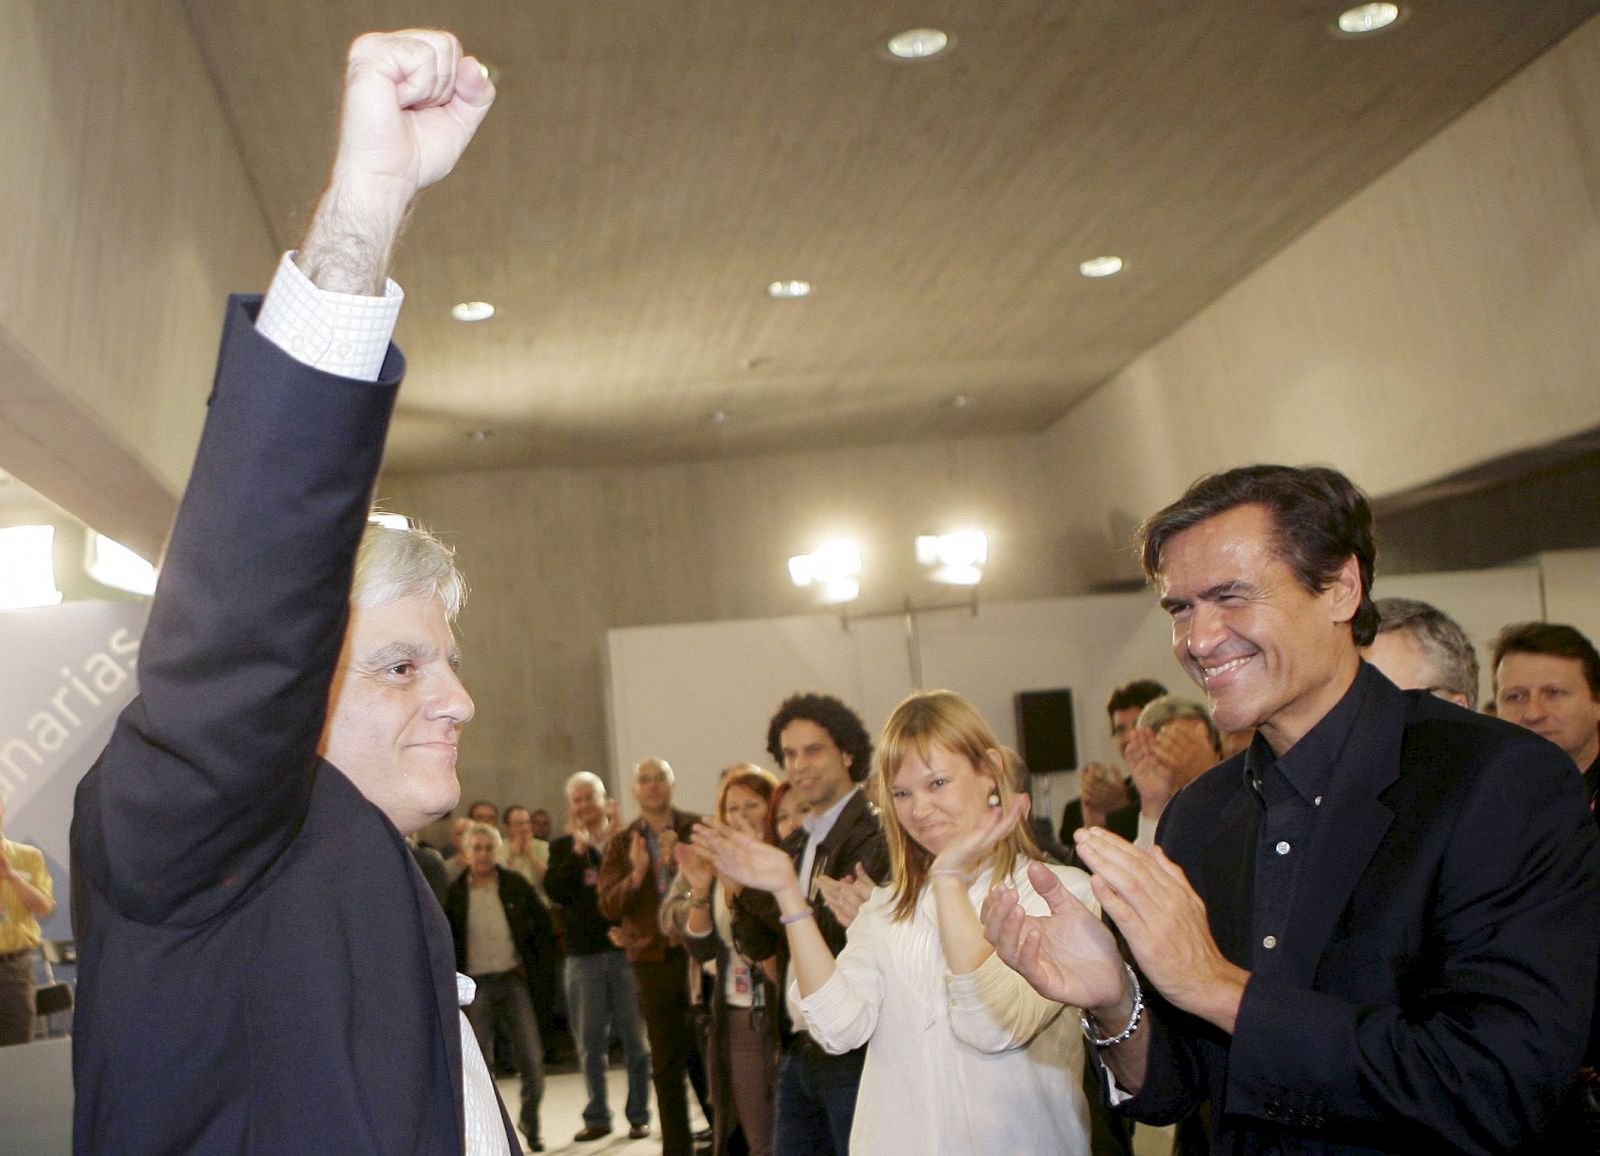 El nuevo líder del PSOE canario (izqda.) frente a su antecesor, López Aguilar.